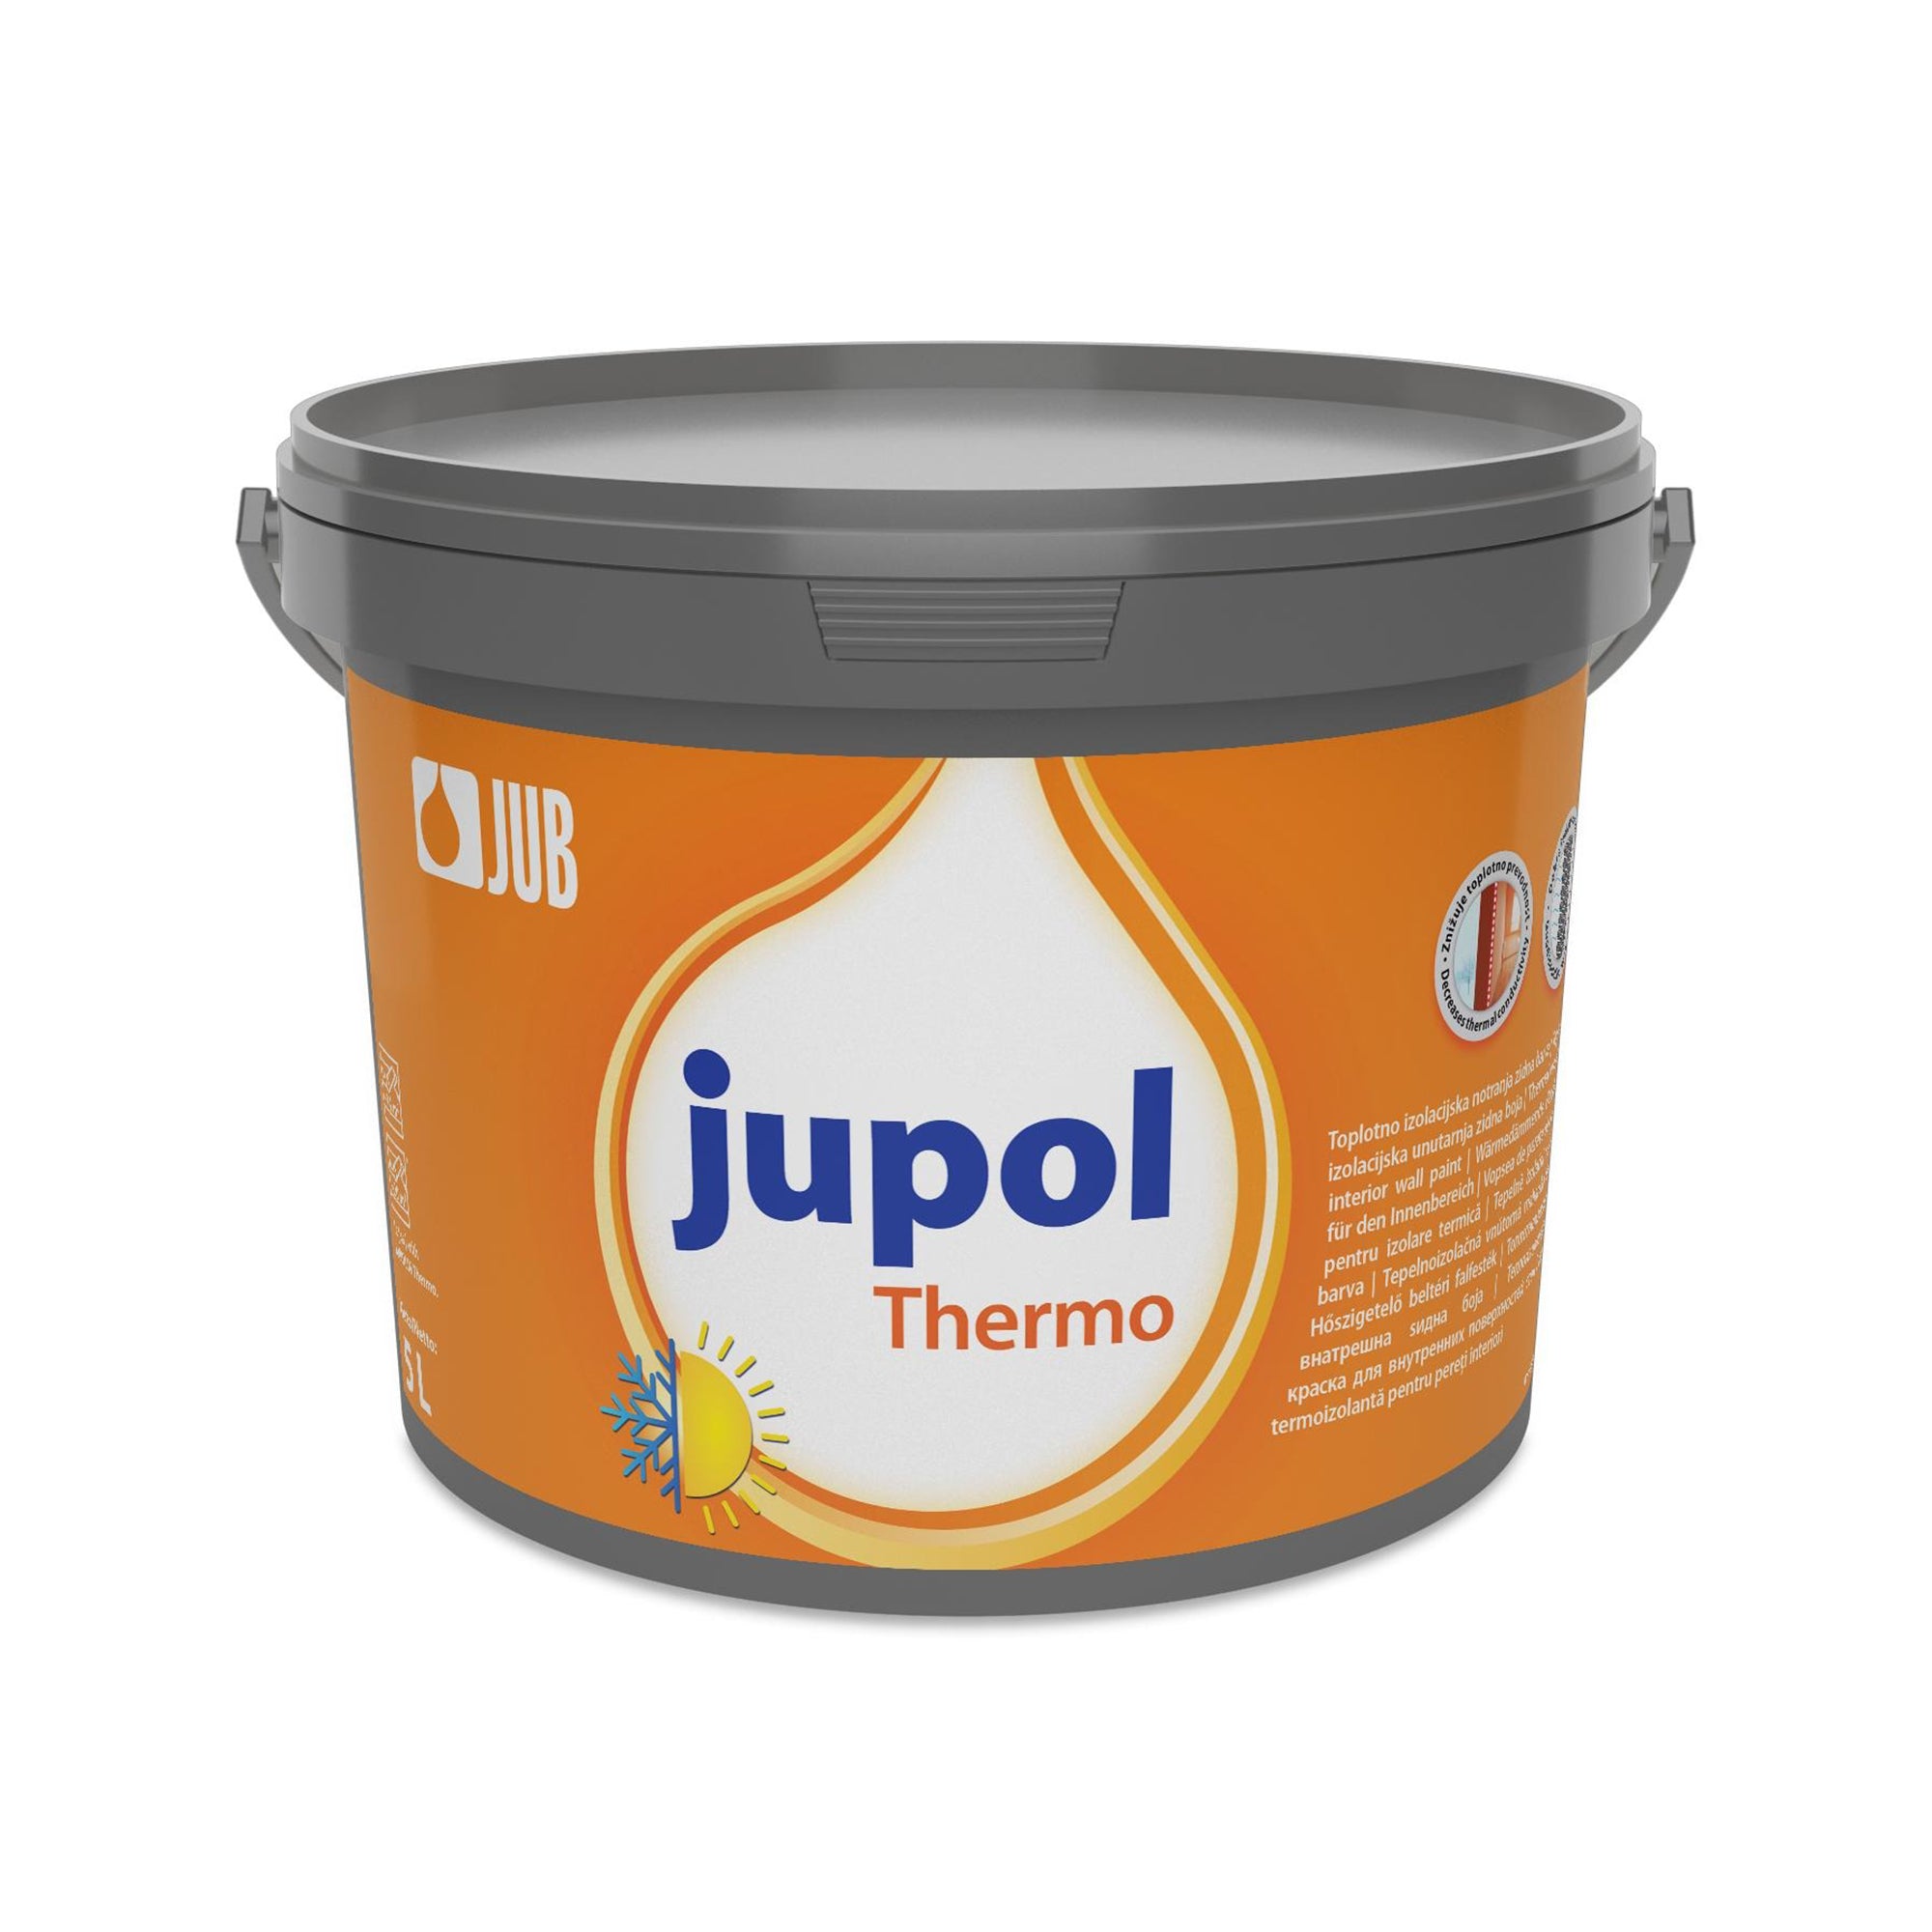 JUB JUPOL Thermo bílá tepelně izolační vnitřní malířská barva 5 l